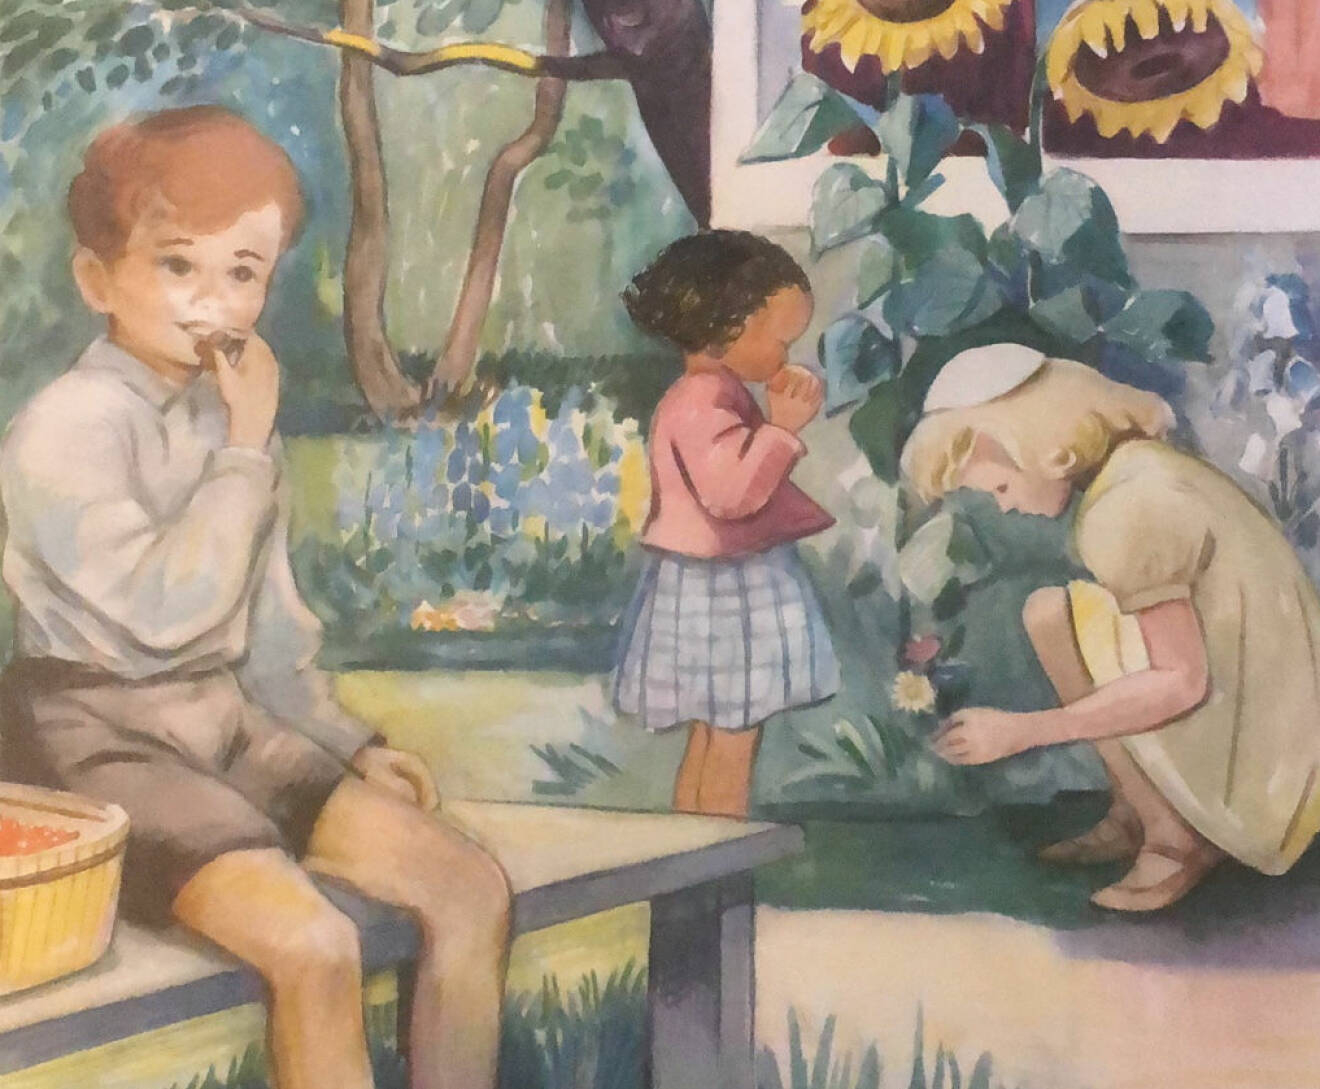 Ommålad kalenderbild. Tre barn mumsar på frukt och plockar blommor i en somrig trädgård. En av flickorna har getts mörk hud och svart, lockigt hår.